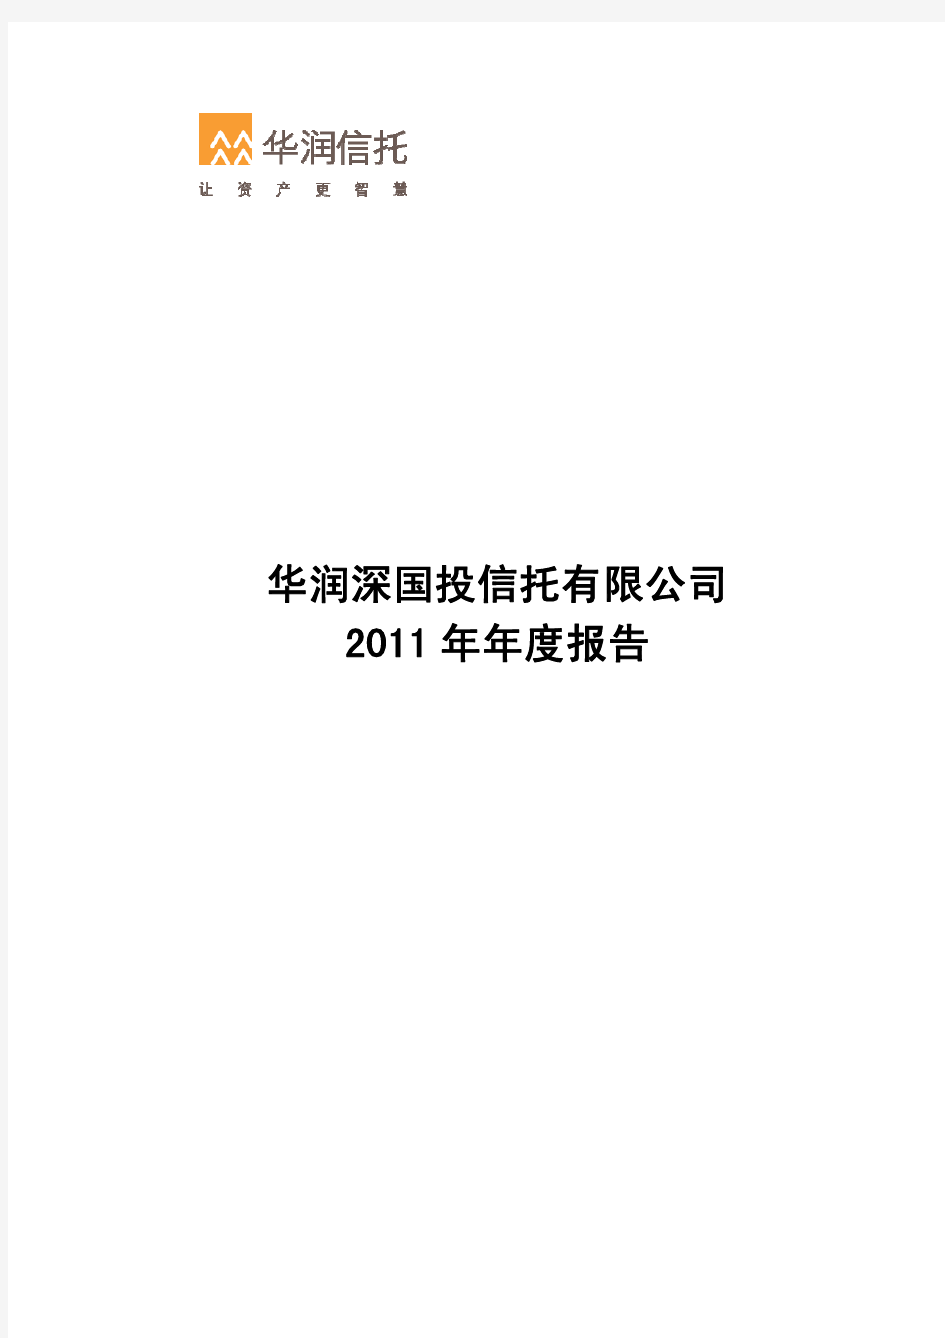 华润信托2011年报